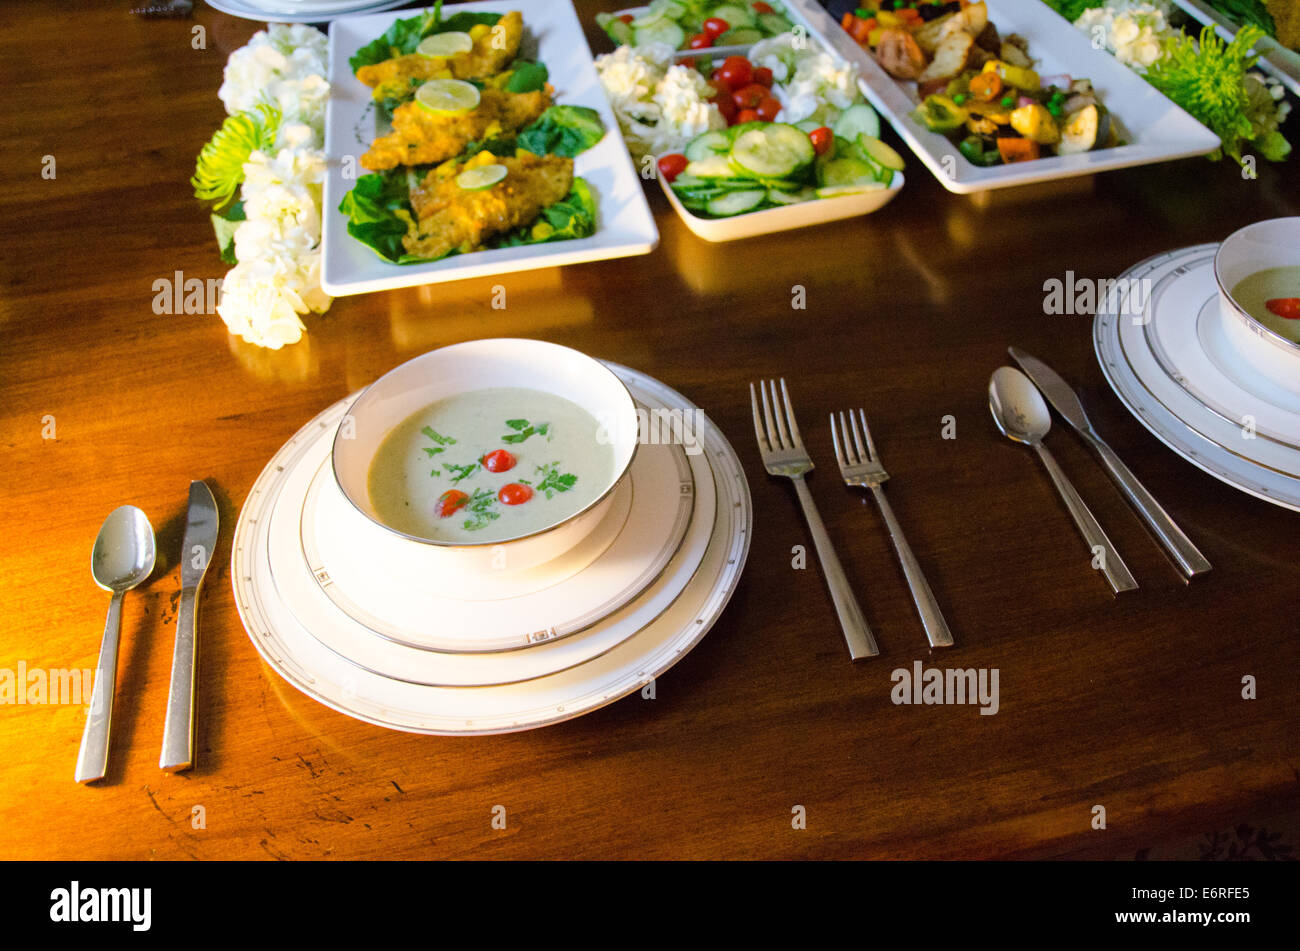 Dîner sous forme de buffet dans un cadre élégant avec de la soupe, du poisson et des légumes sur une table à manger en bois avec fantaisie la porcelaine blanche Banque D'Images